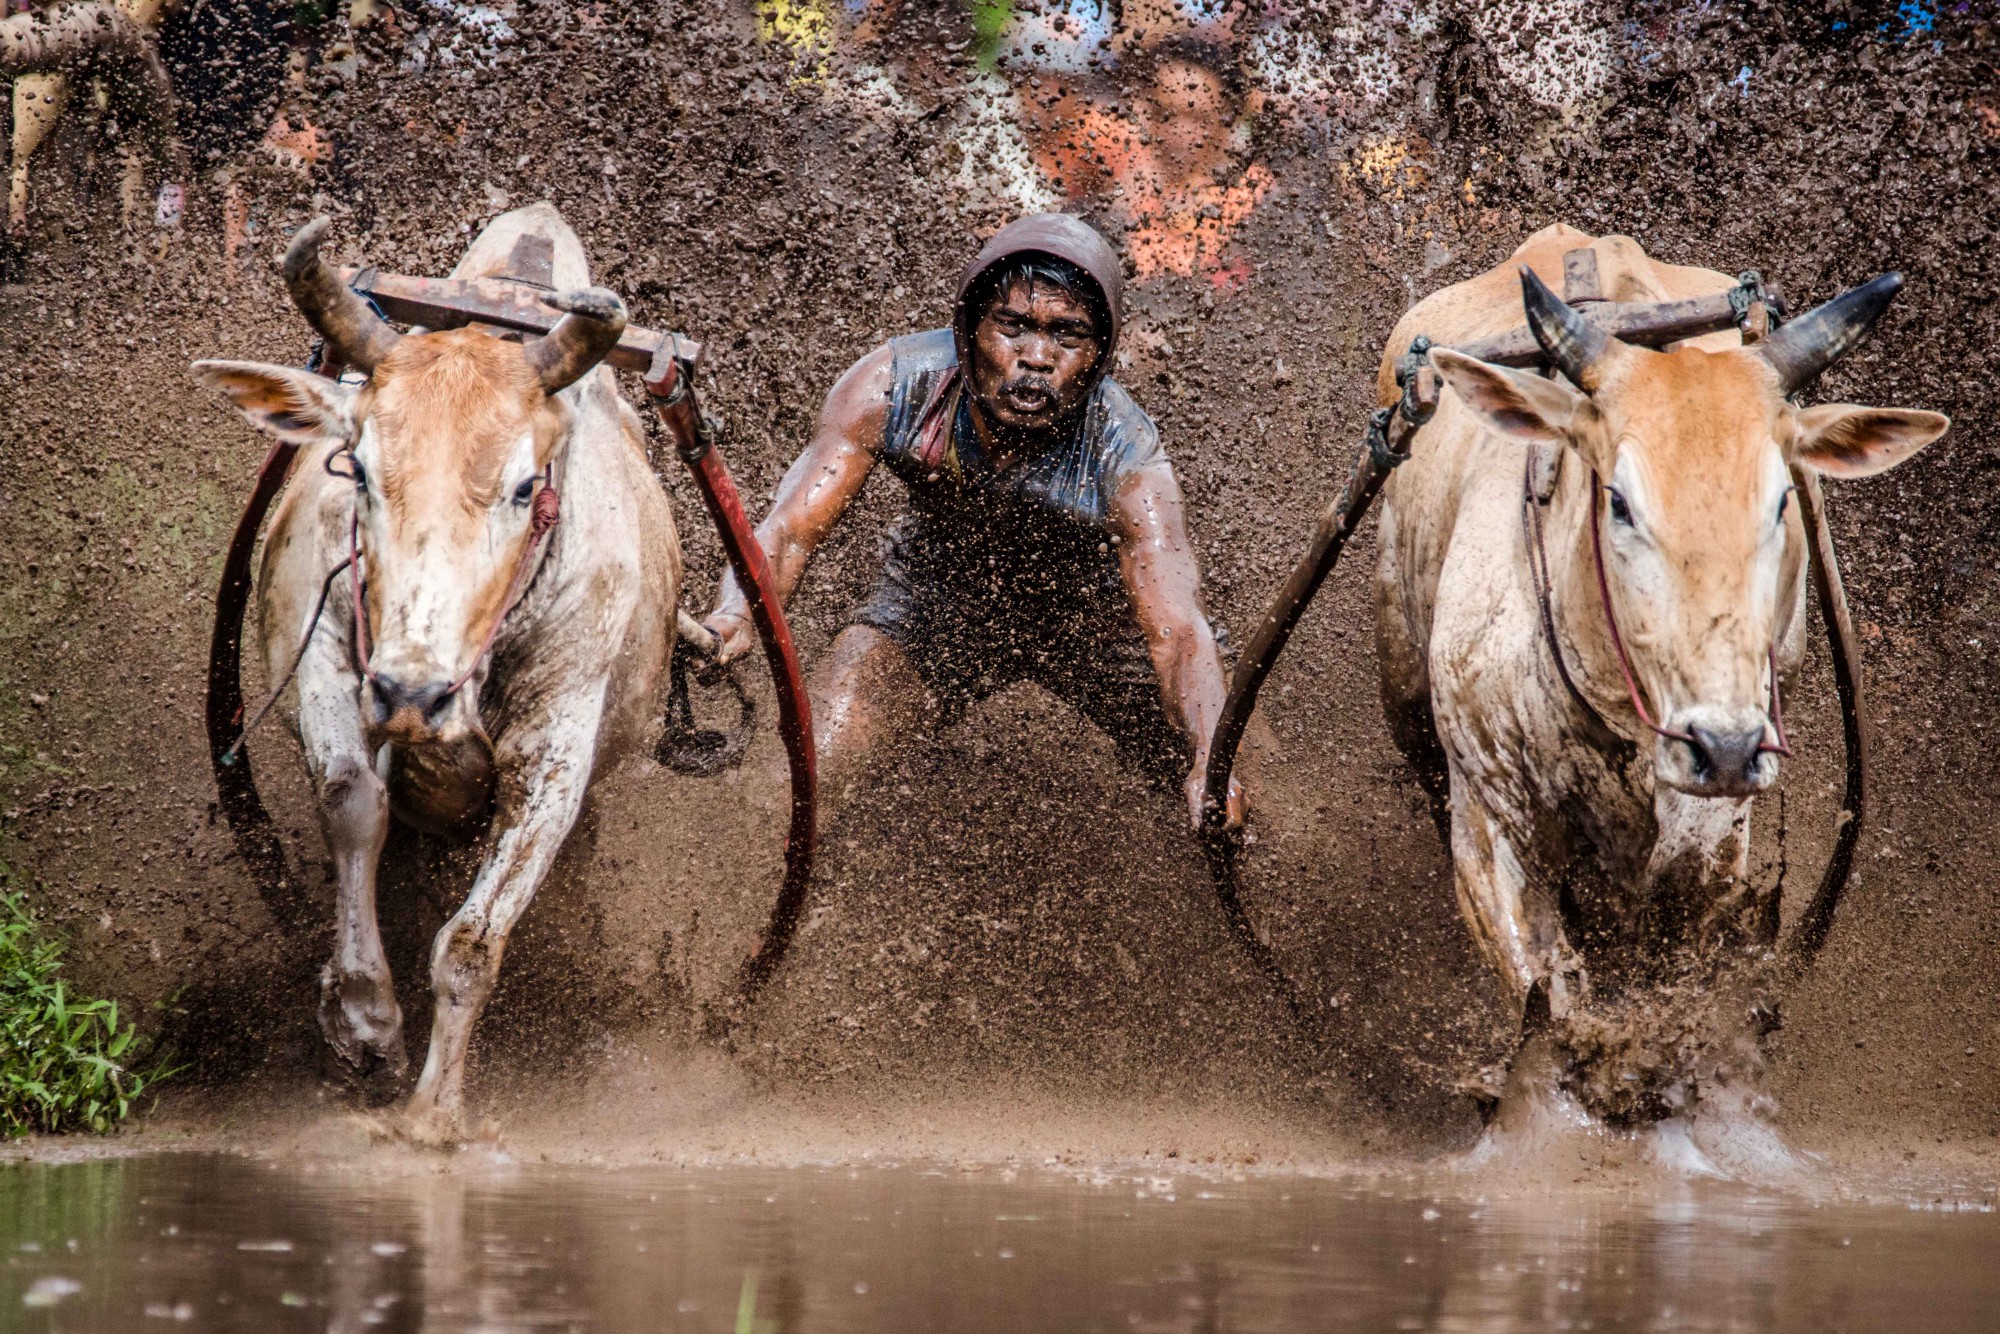 Szumátrai bikaversenyen készült fénykép nyert a Wikipedia éves fotóviadalán